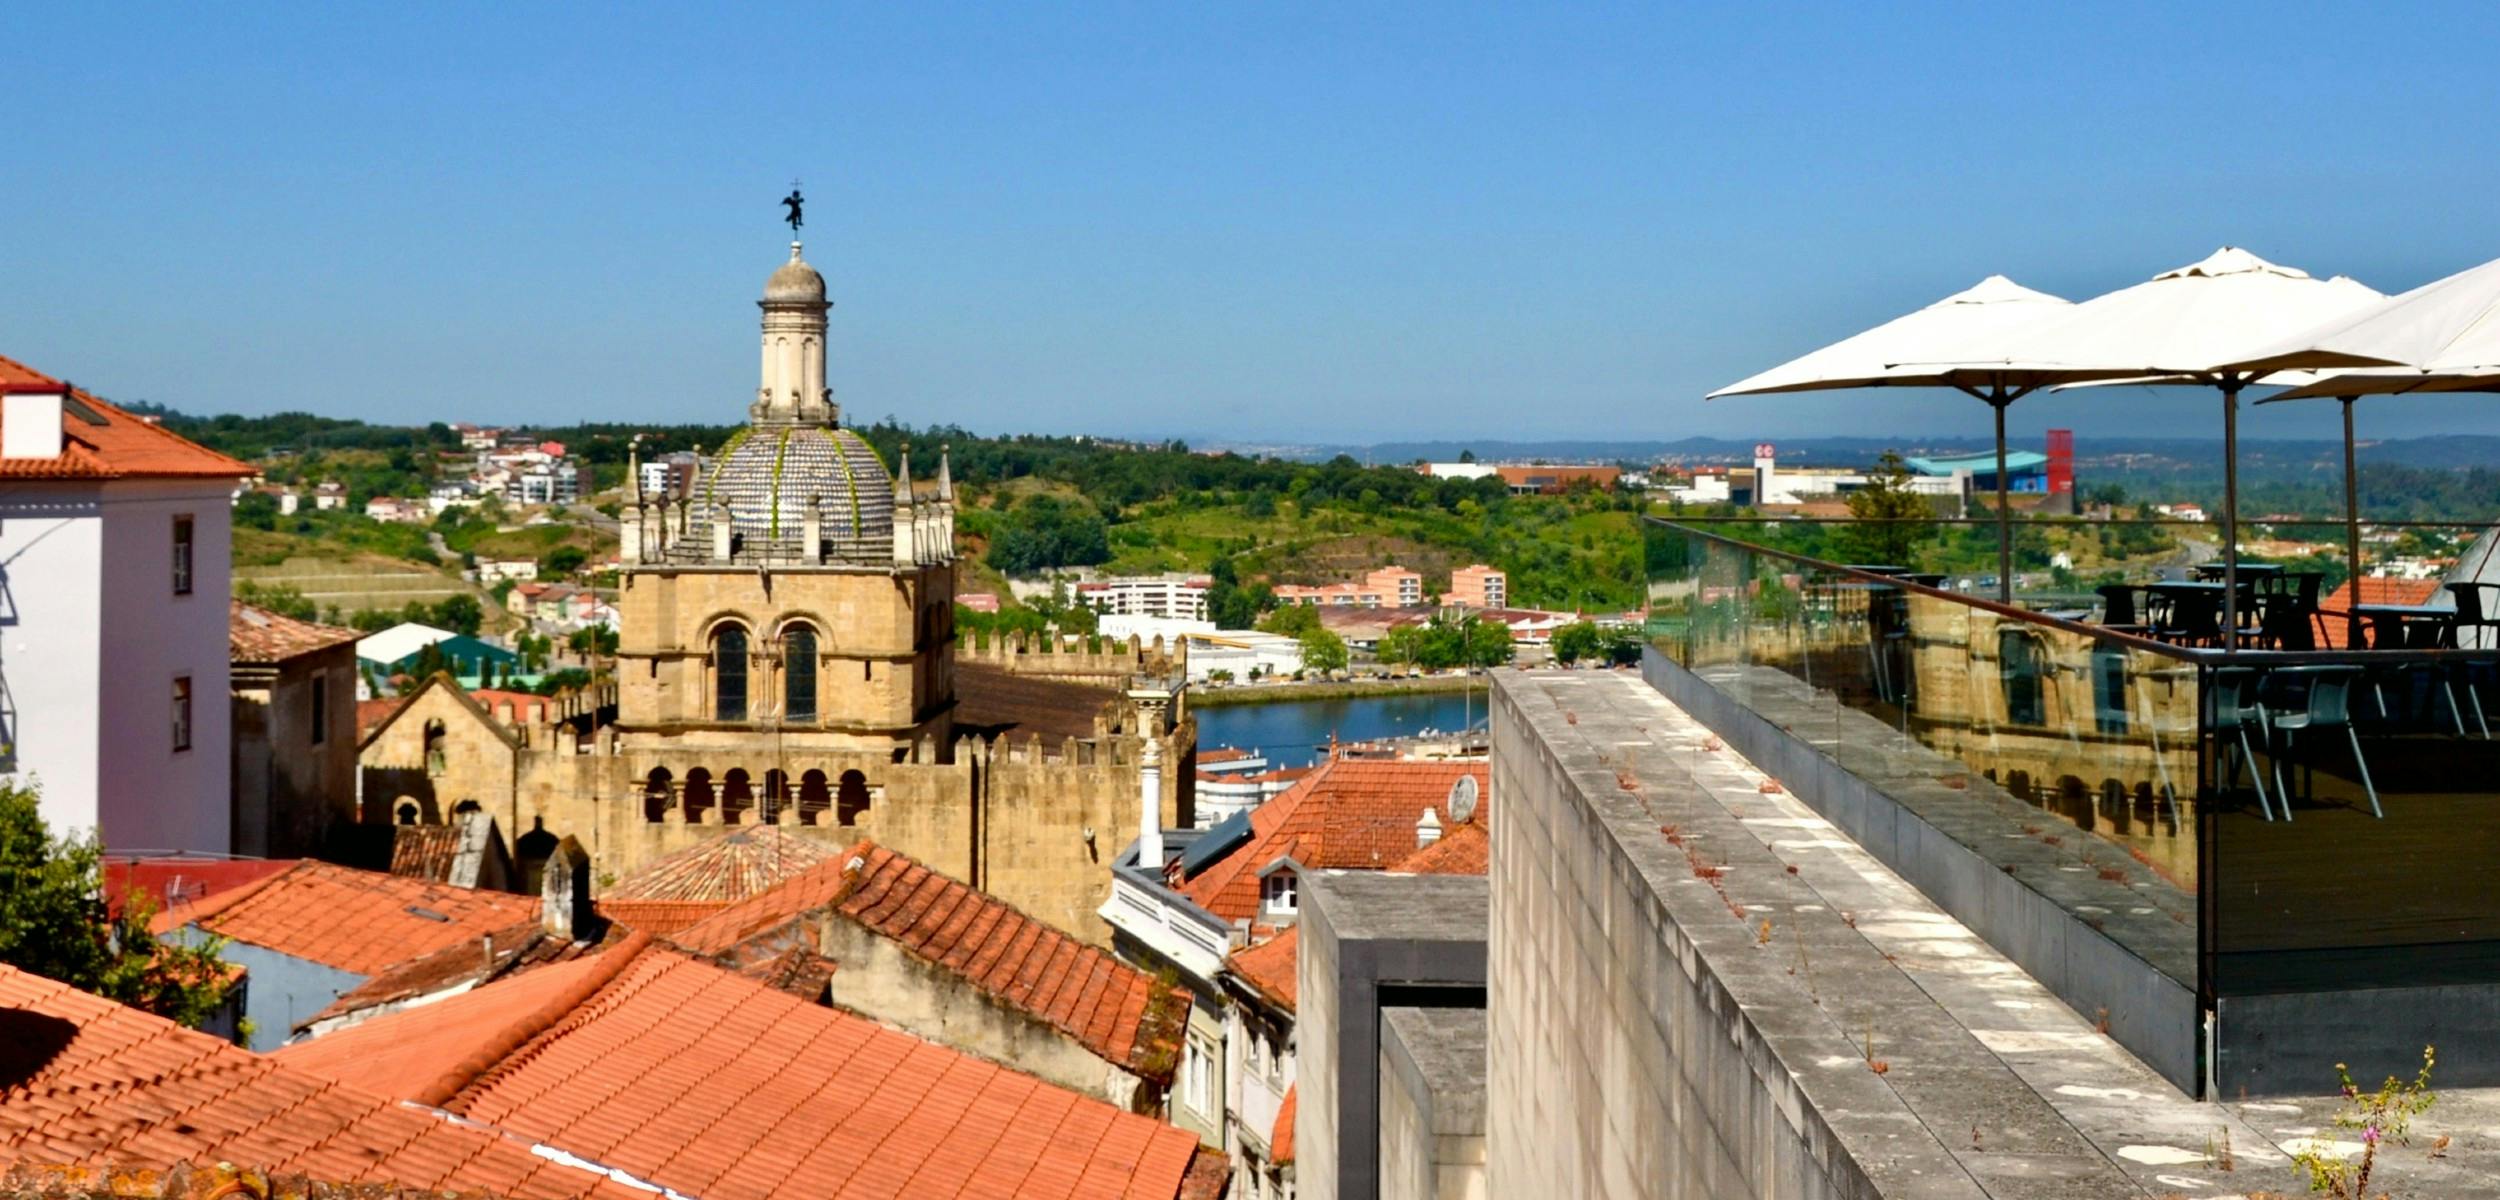 Passeggiata alla scoperta autoguidata delle cattedrali e dei gigli di Coimbra